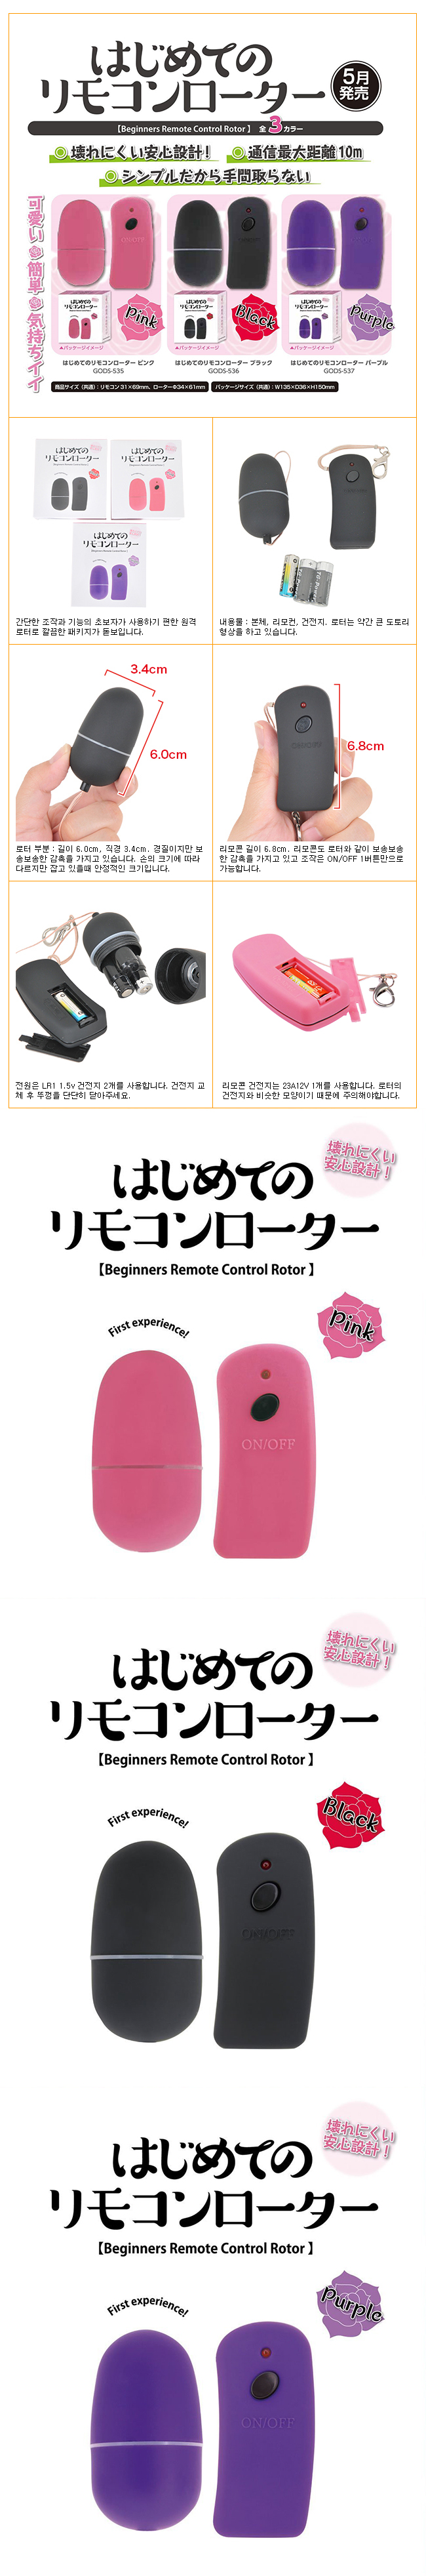 [일본 직수입] 첫 체험 리모콘 로터(はじめてのリモコンローター) - 케이엠피